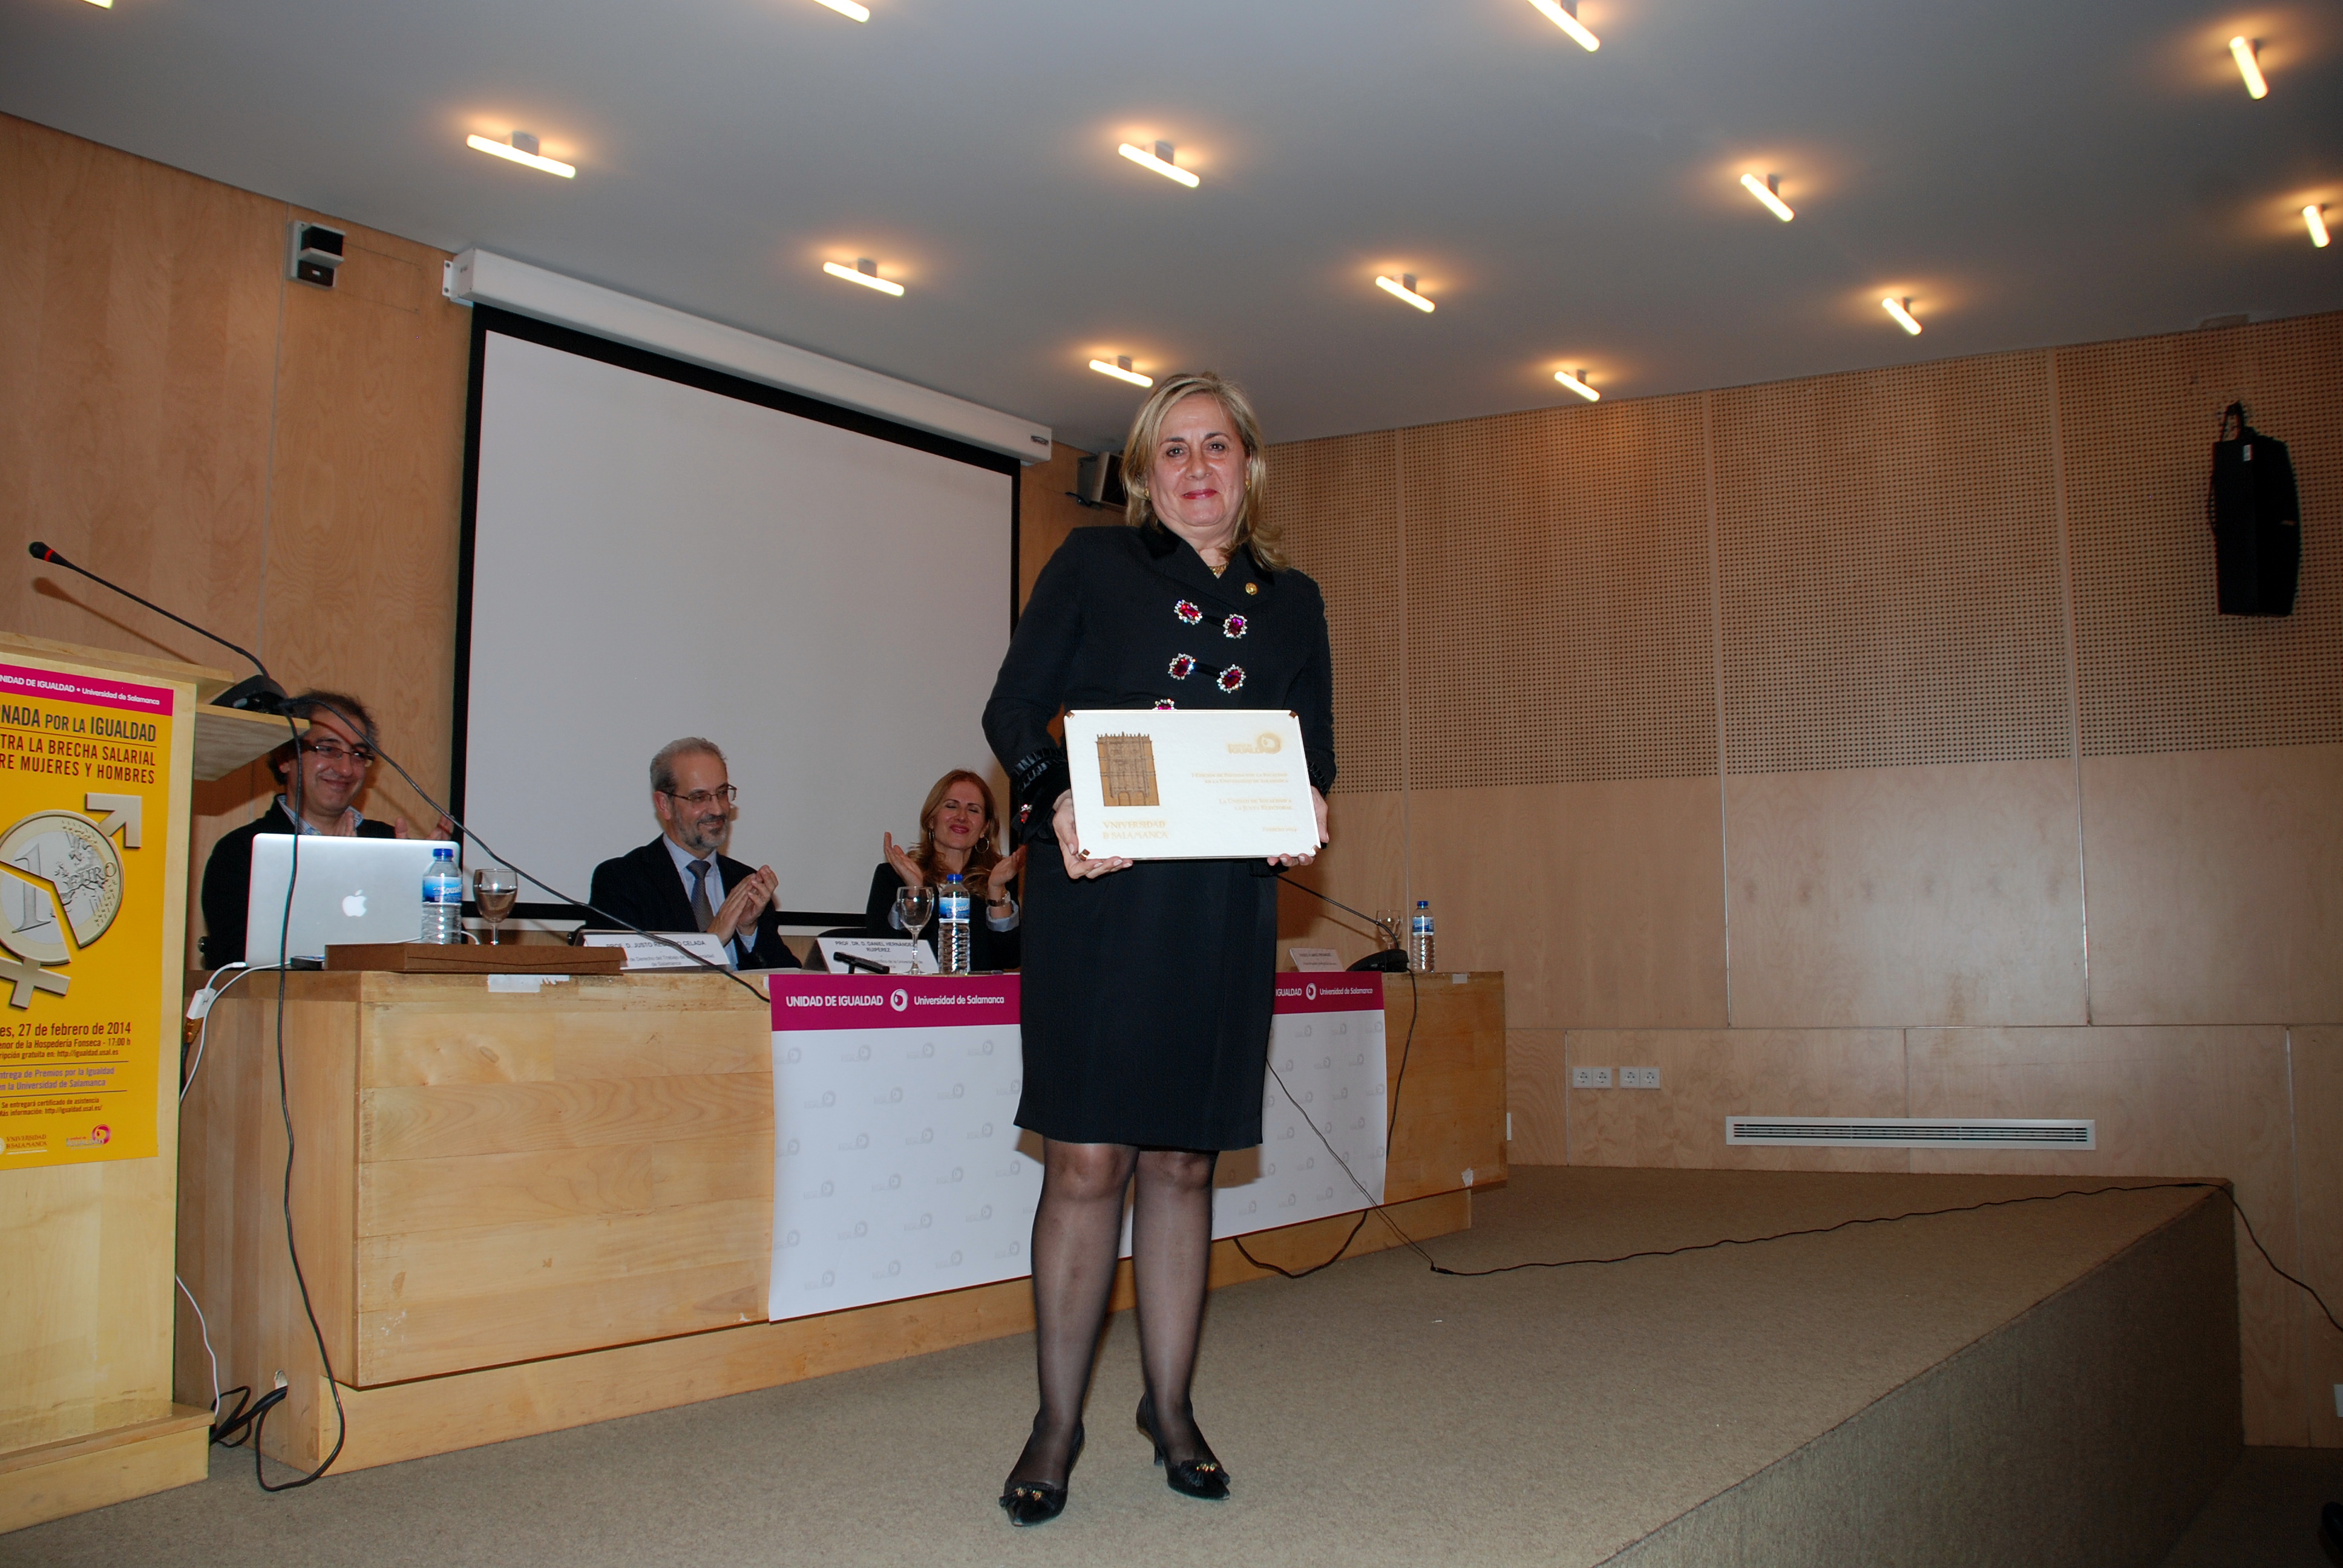 El rector asiste a la entrega de la I Edición de Premios por la Igualdad de la Unidad de Igualdad de la Universidad de Salamanca